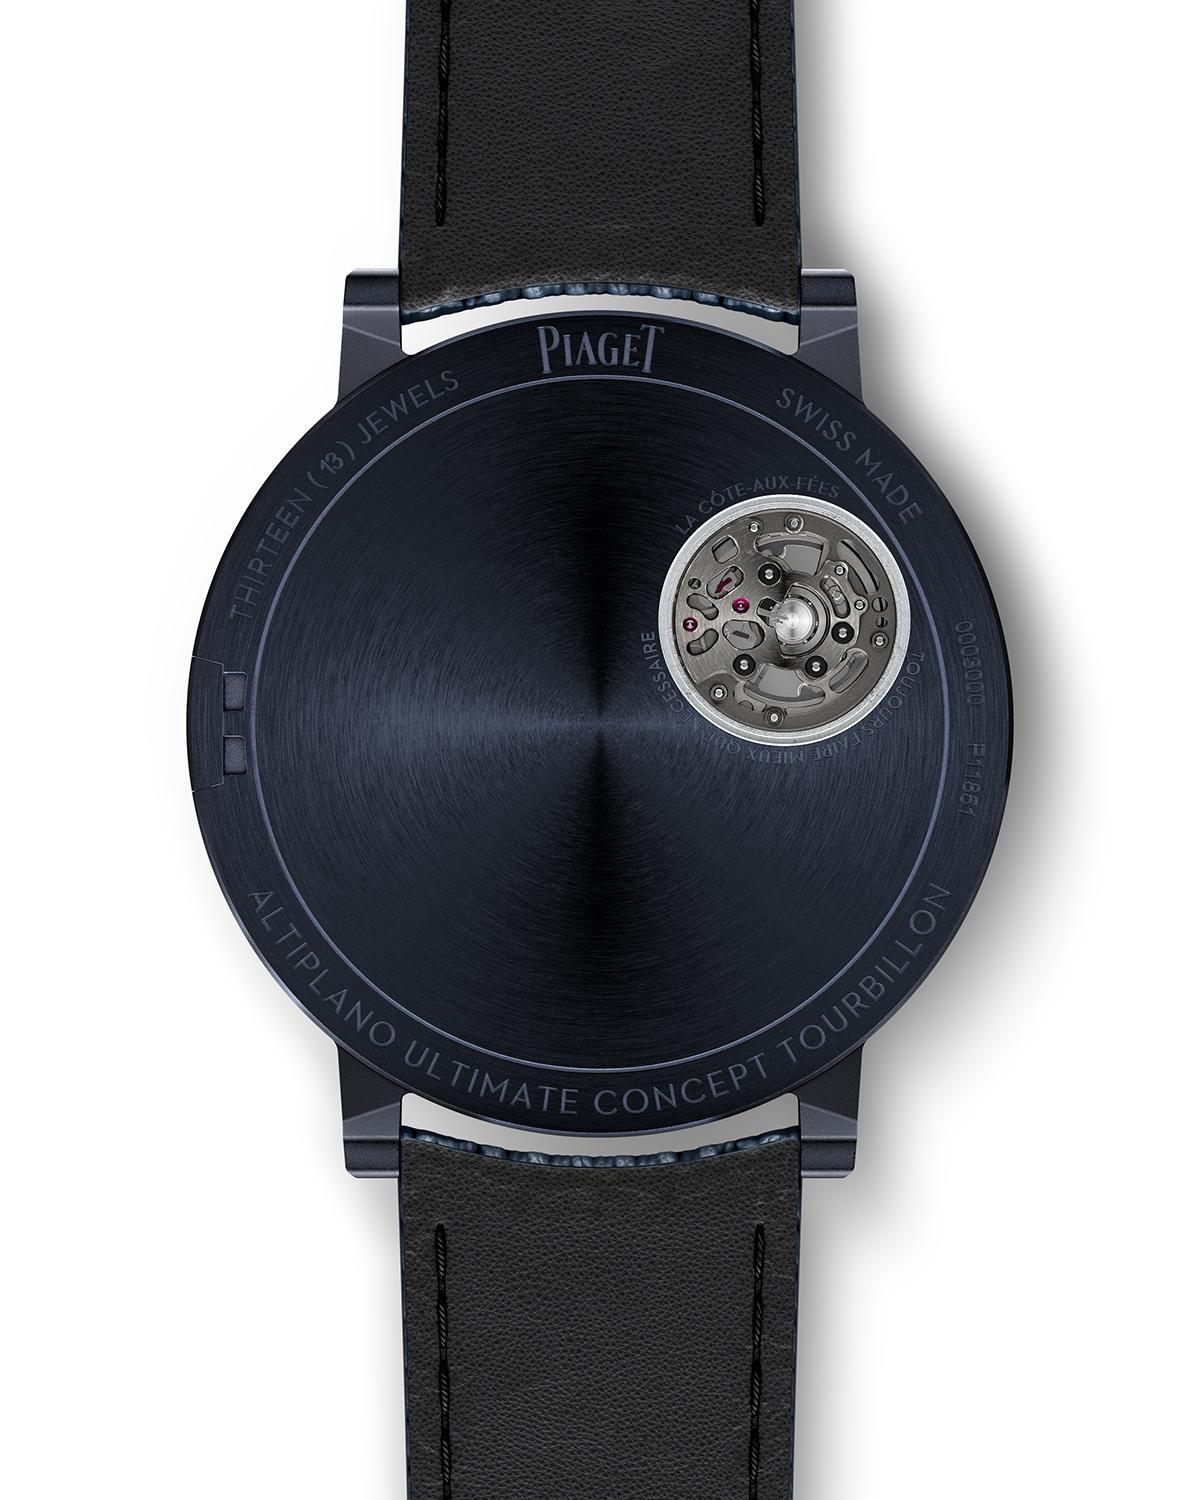 Piaget A.U.C Tourbillon: Giới hạn nào cho đồng hồ đeo tay? 11